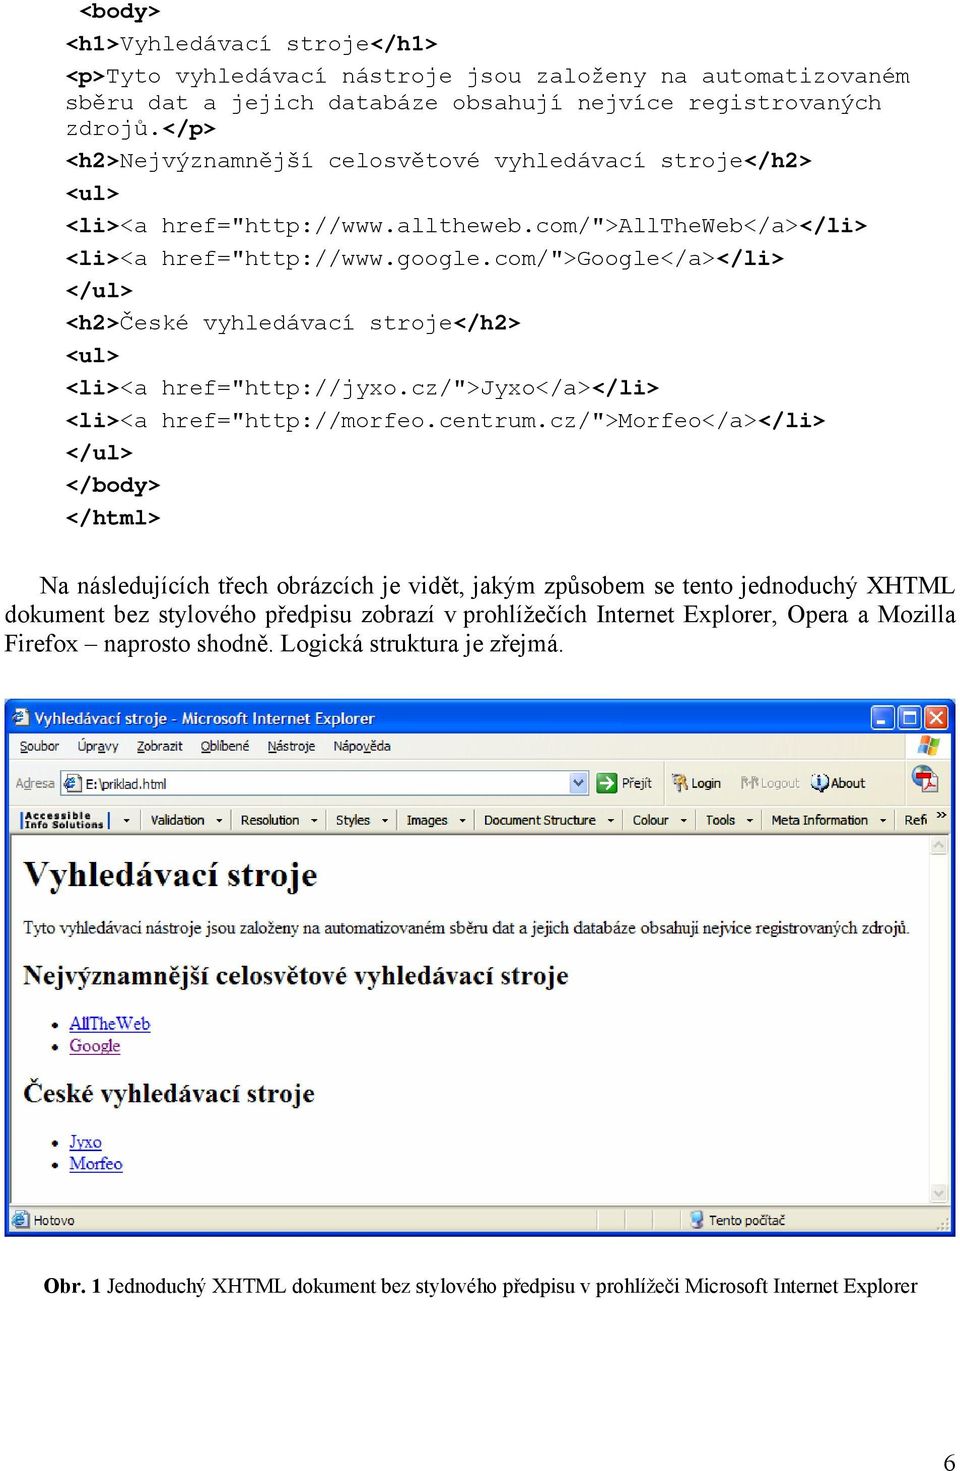 com/">google</a></li> </ul> <h2>české vyhledávací stroje</h2> <ul> <li><a href="http://jyxo.cz/">jyxo</a></li> <li><a href="http://morfeo.centrum.